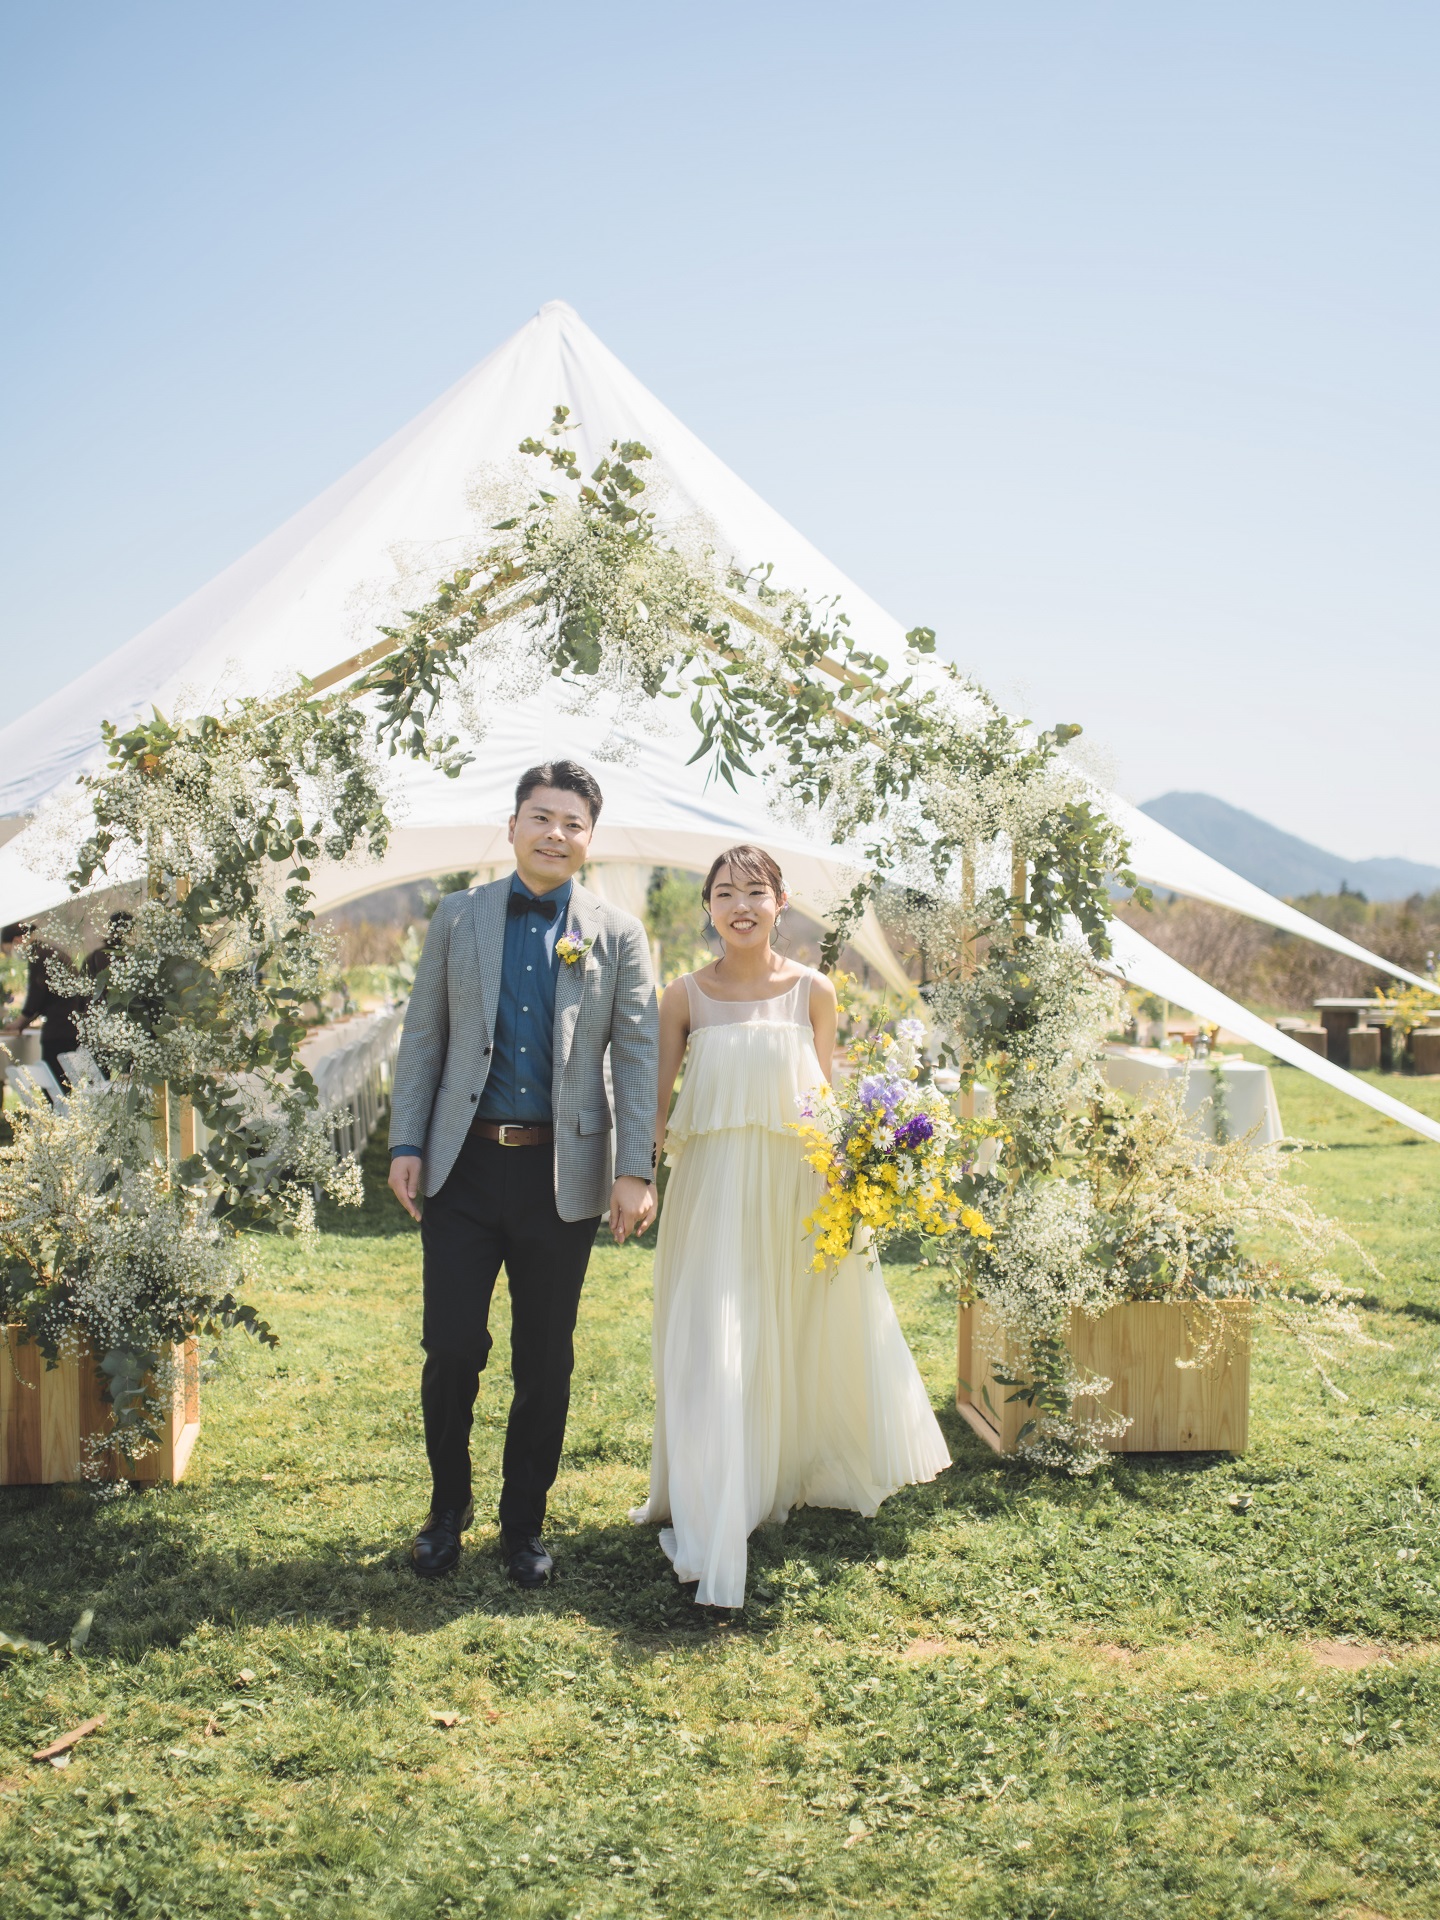 広島の砂谷牧場にてP-style weddingがプロデュースしたアウトドアウェディング。